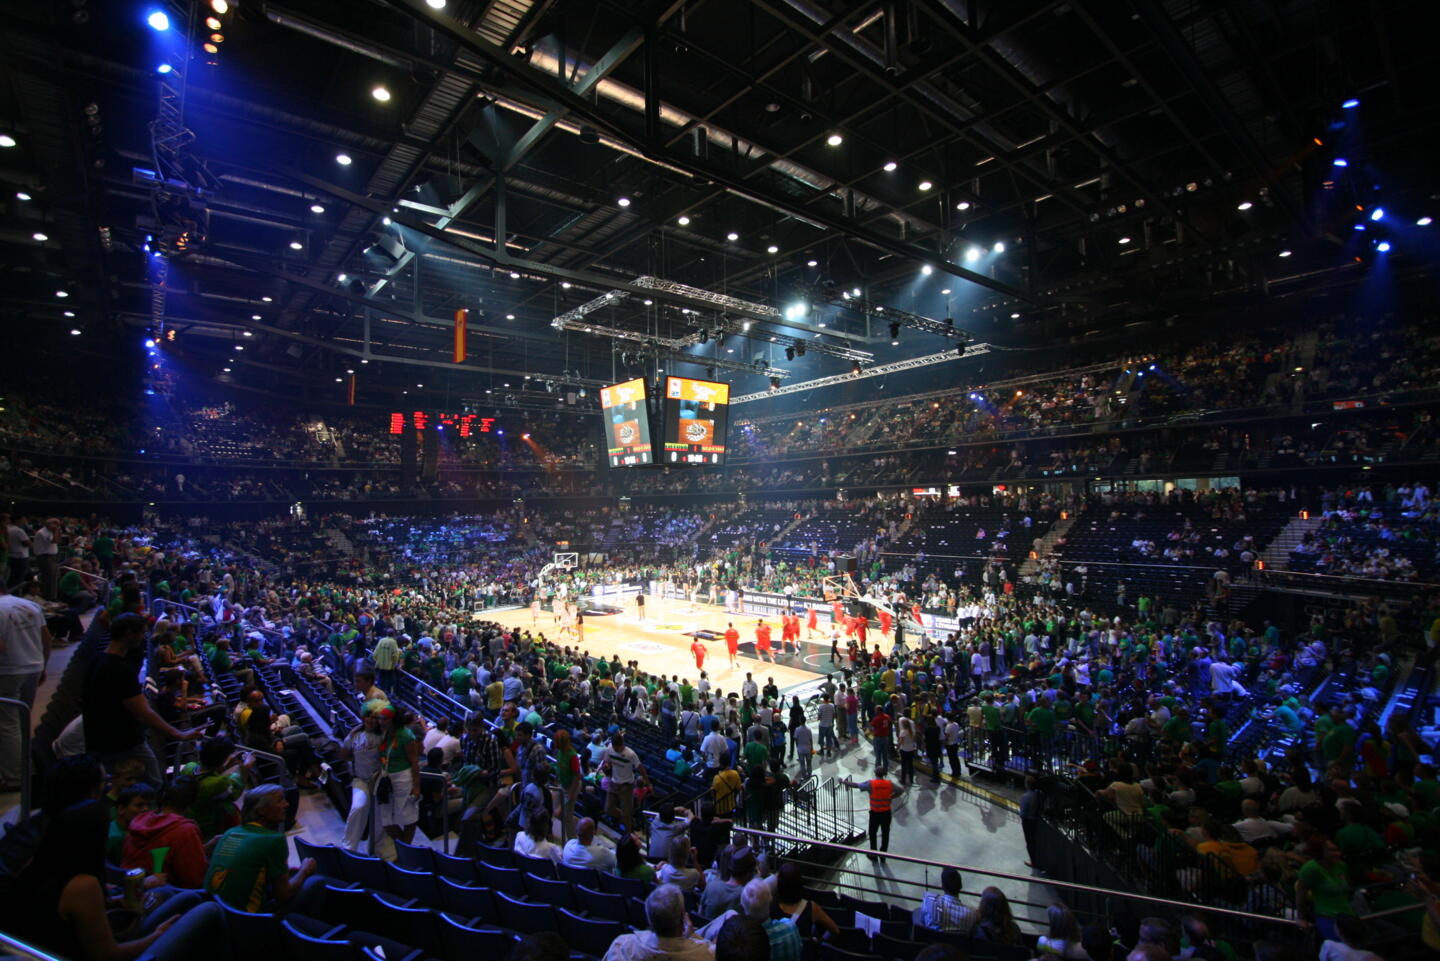 Innenansicht einer überfüllten Sportarena bei einer Basketballveranstaltung, mit grün gekleideten Zuschauern und dem Geschehen in der Mitte auf dem beleuchteten Parkett.